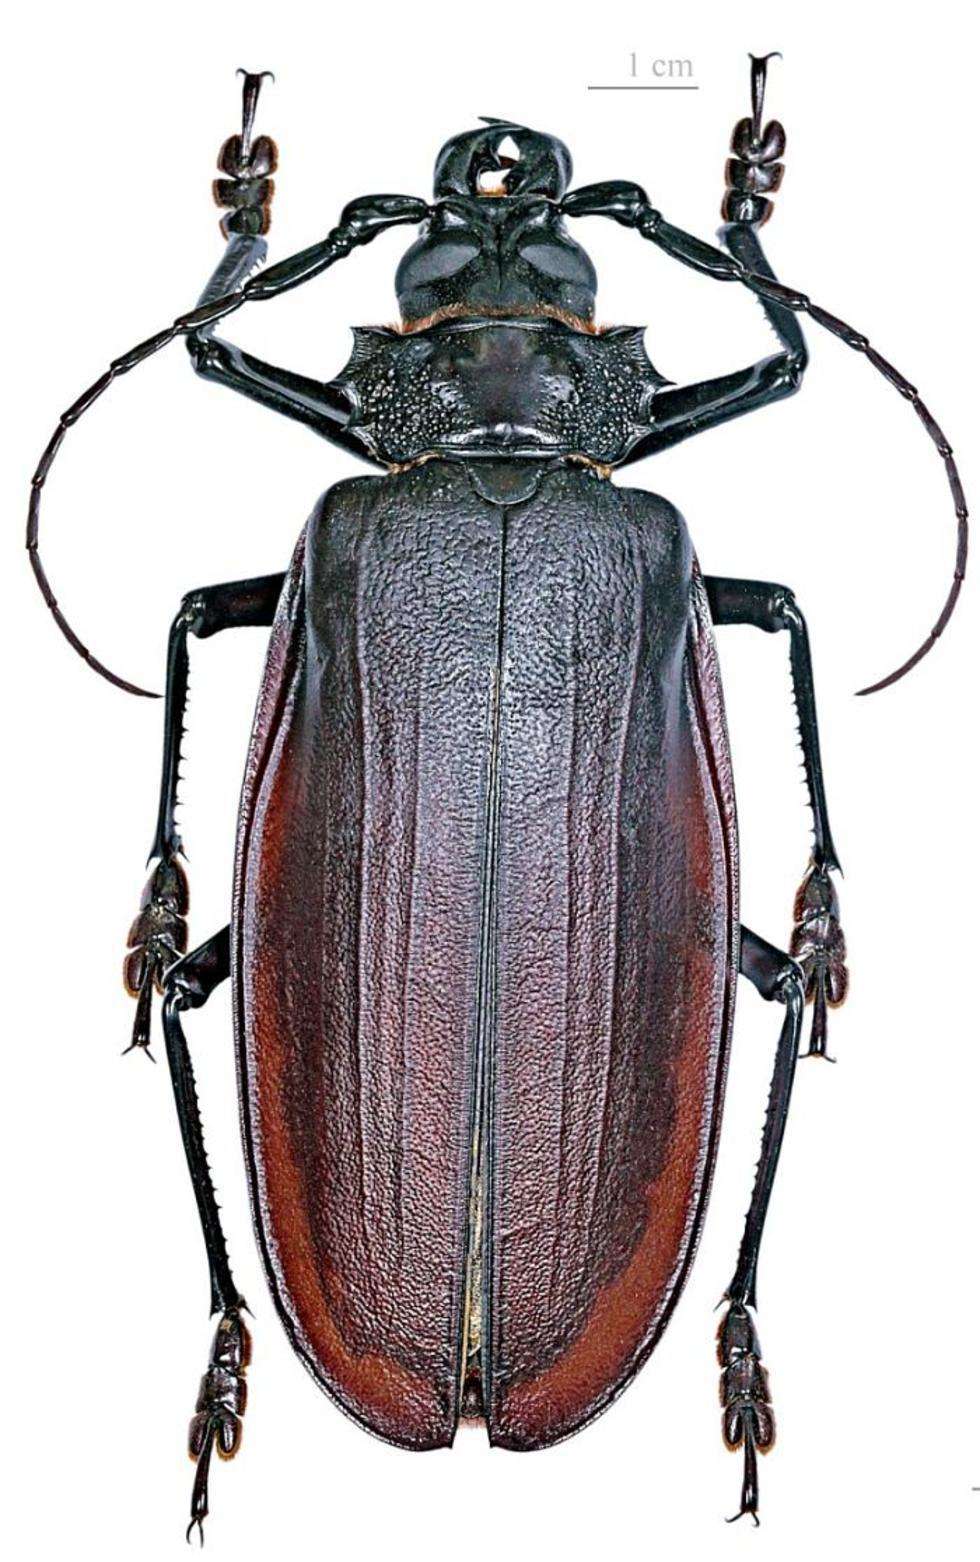  Titanus giganteus to gatunek chrząszcza z rodziny kózkowatych, spotykany w lasach Amazonii. Osobniki tego gatunku są jednymi z największych współcześnie żyjących chrząszczy. Osiągają do 20 cm wielkości i mogą ważyć nawet kilkaset gramów.